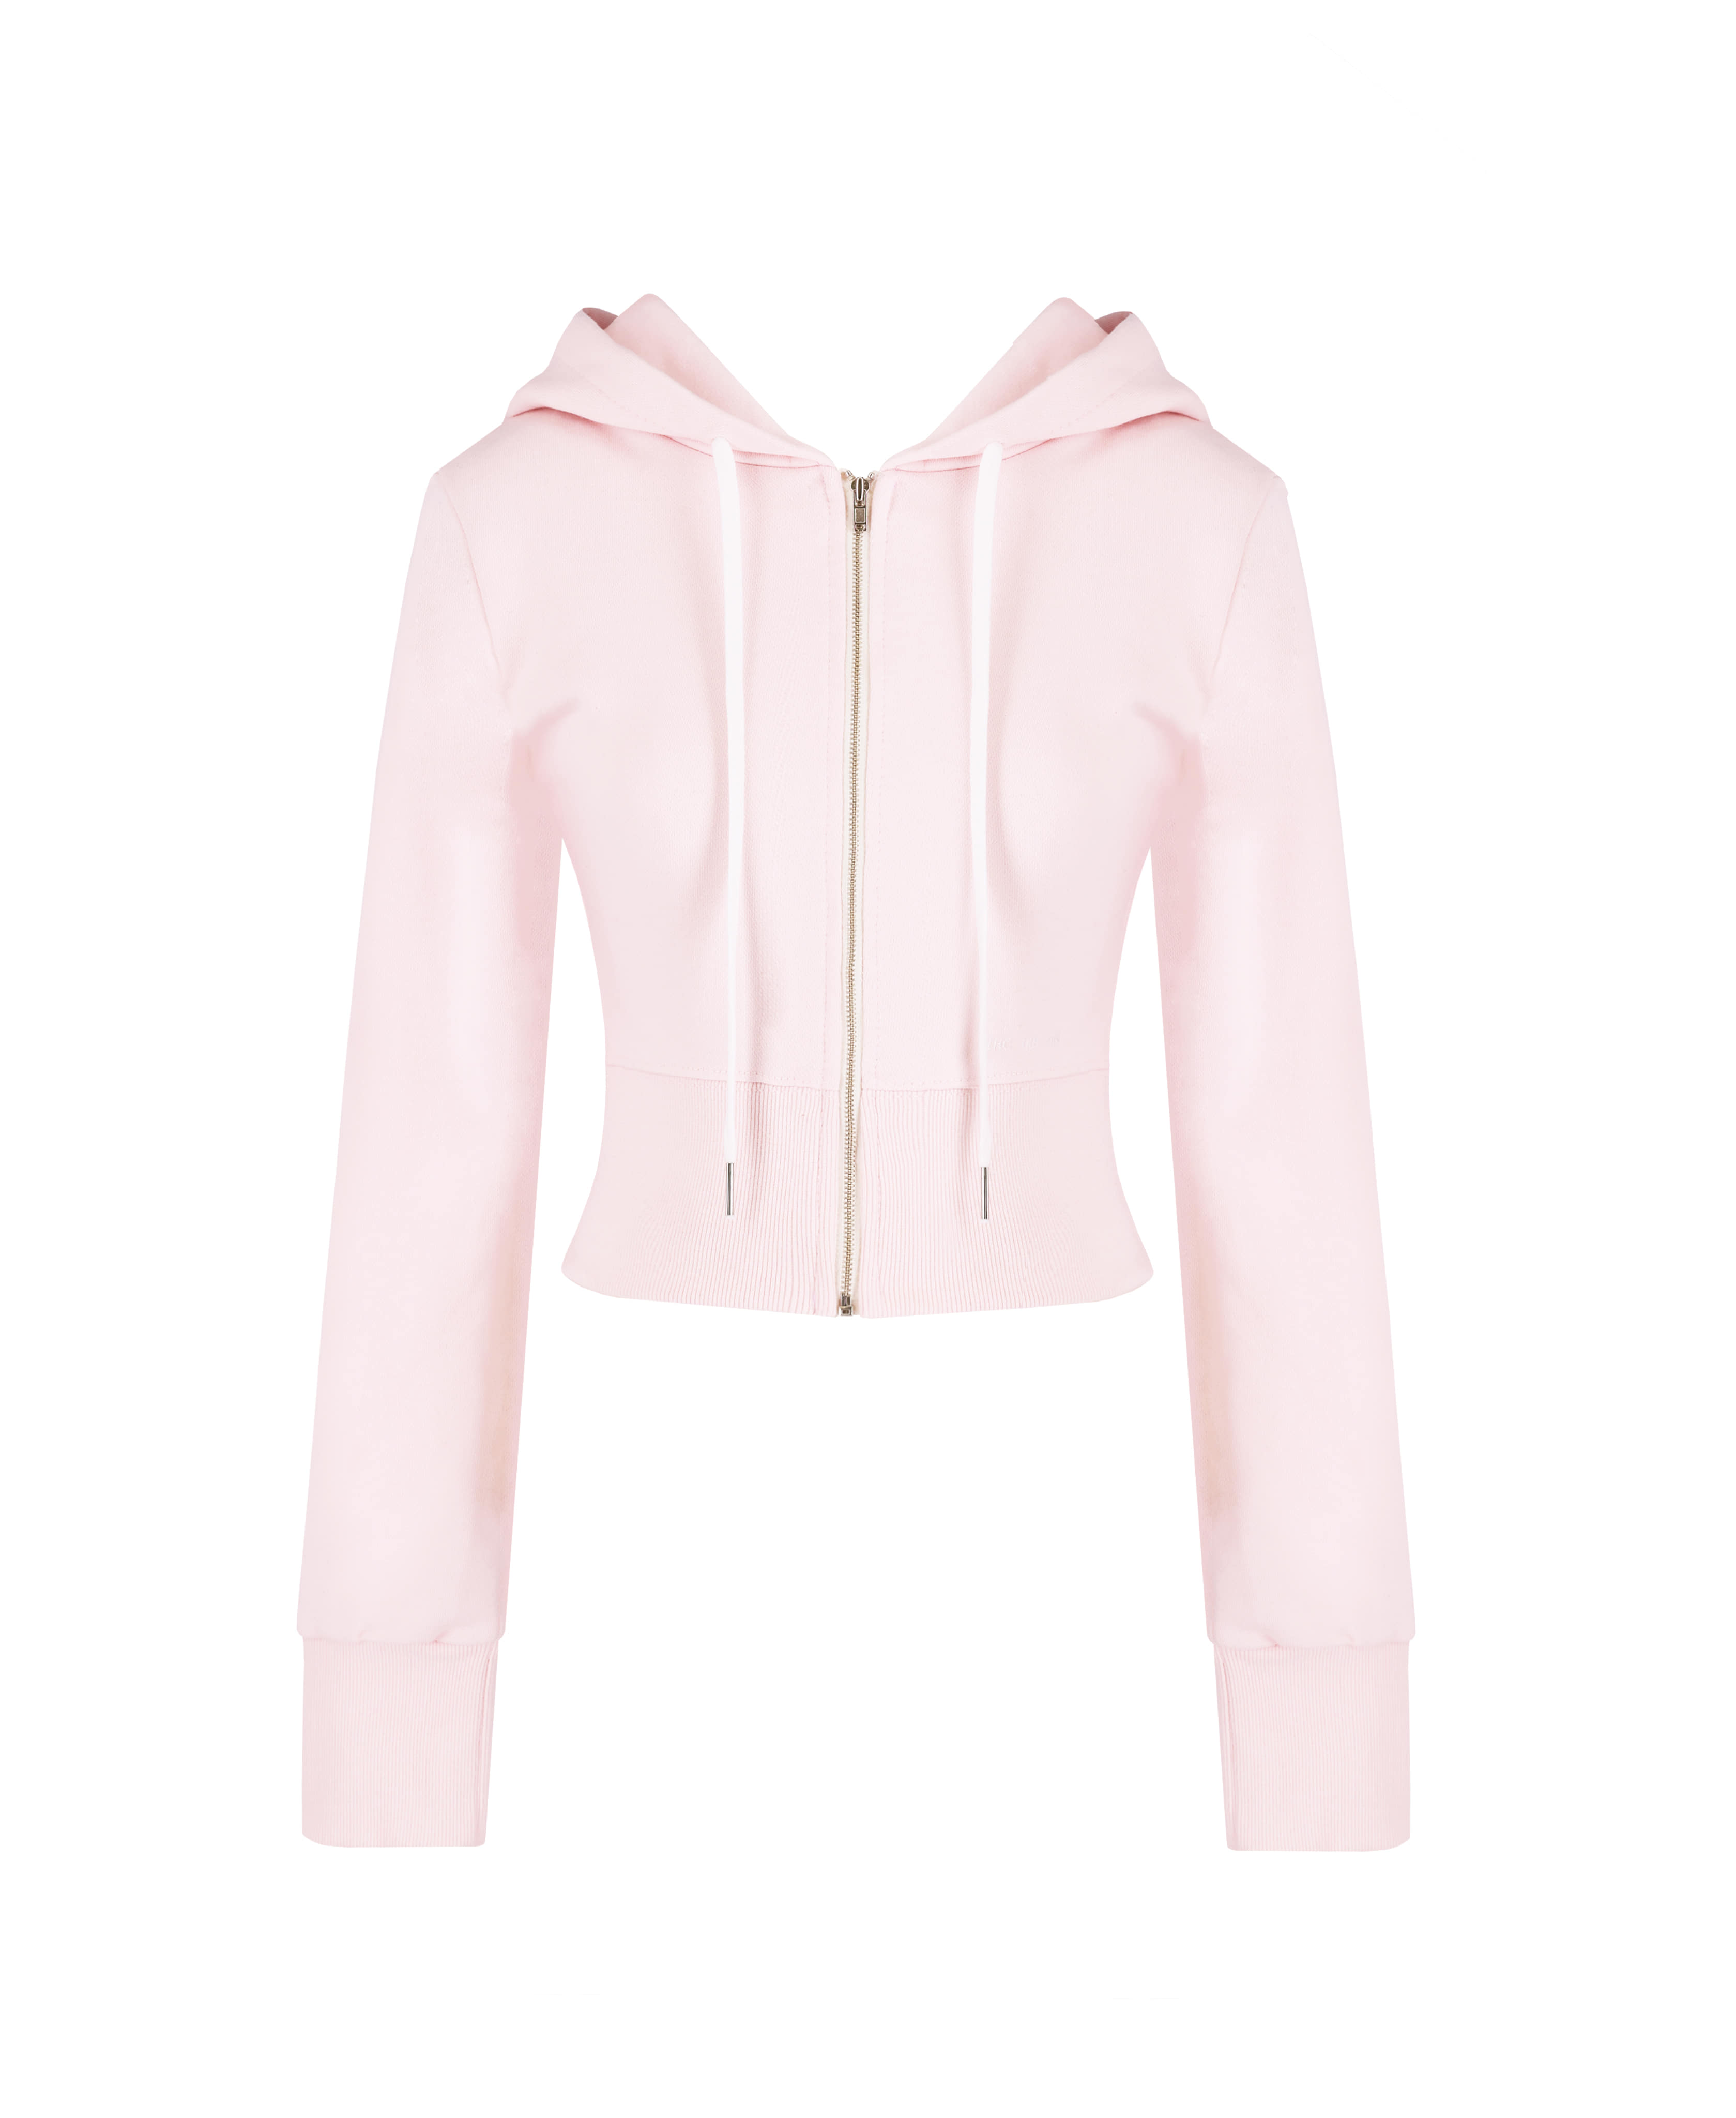 [Made] Macaroon hoodie / Baby pink